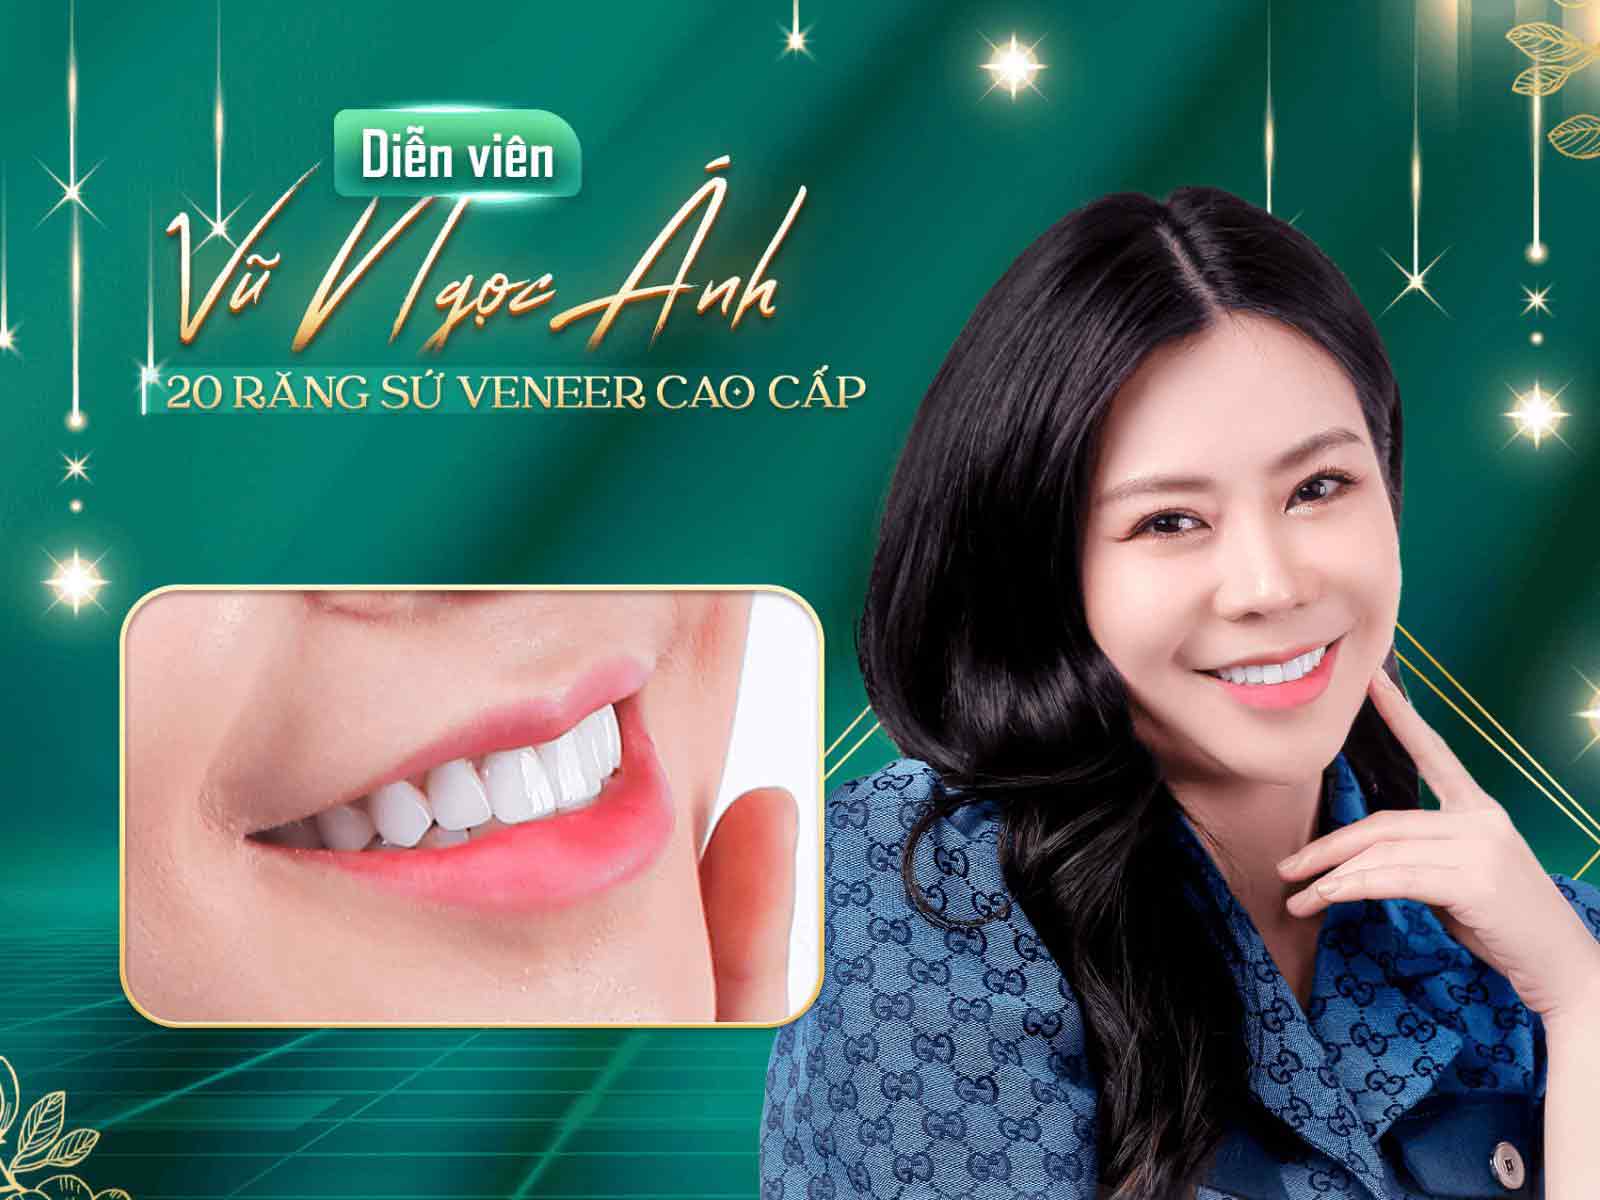 diễn viên Vũ Ngọc Ánh làm răng sứ tại nha khoa casino online uy tín



